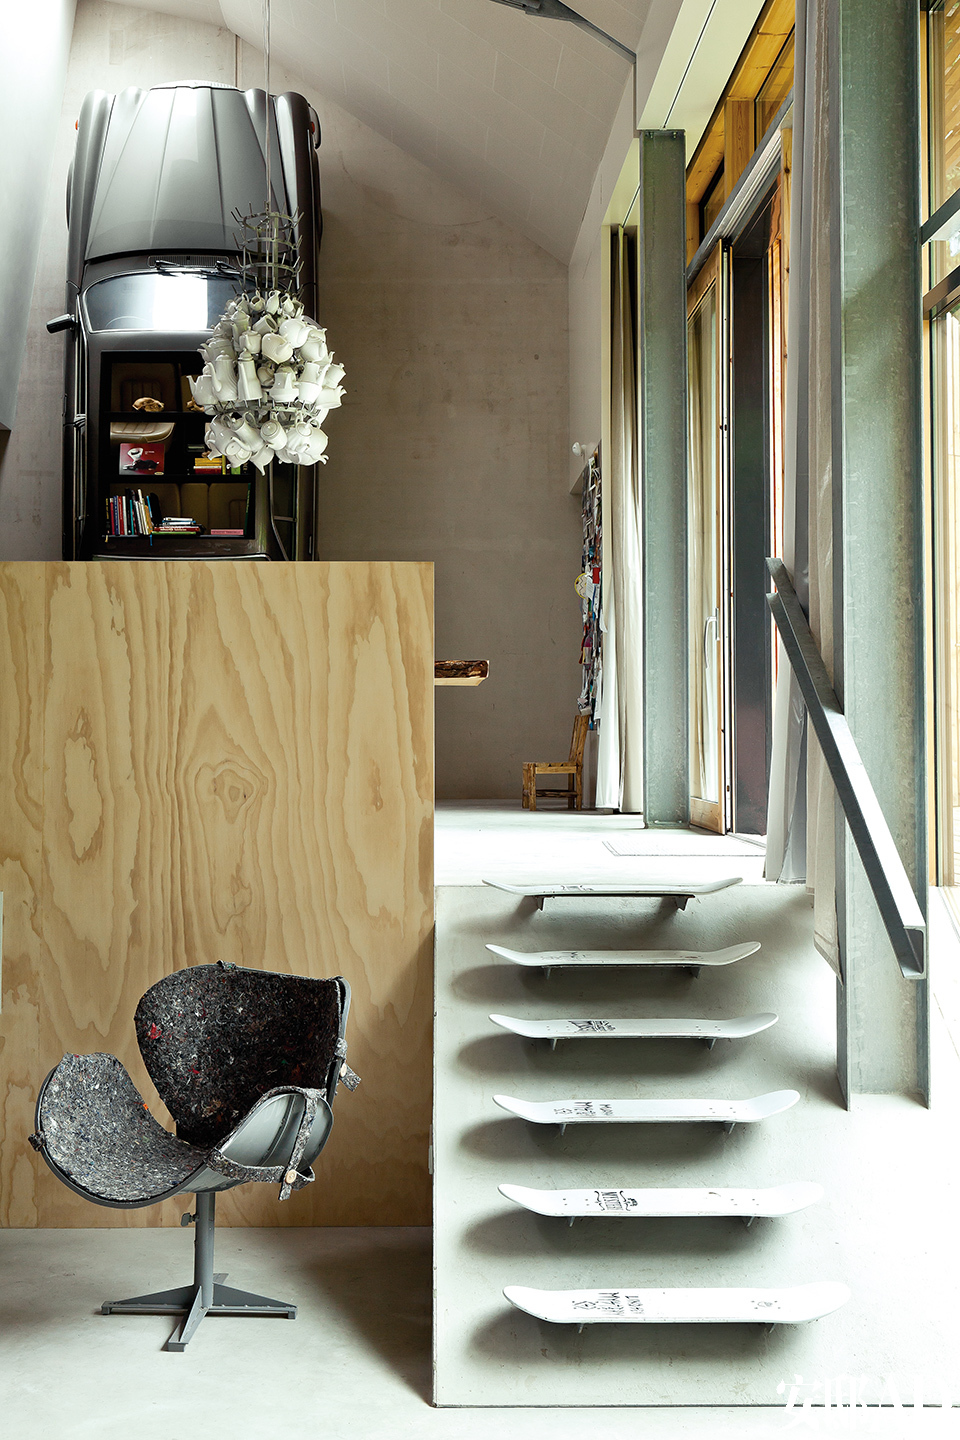 粗獷的水泥和鋼鐵梁柱也是室內設計的一部分，溜冰板被涂成灰色，變成了樓梯的臺階。